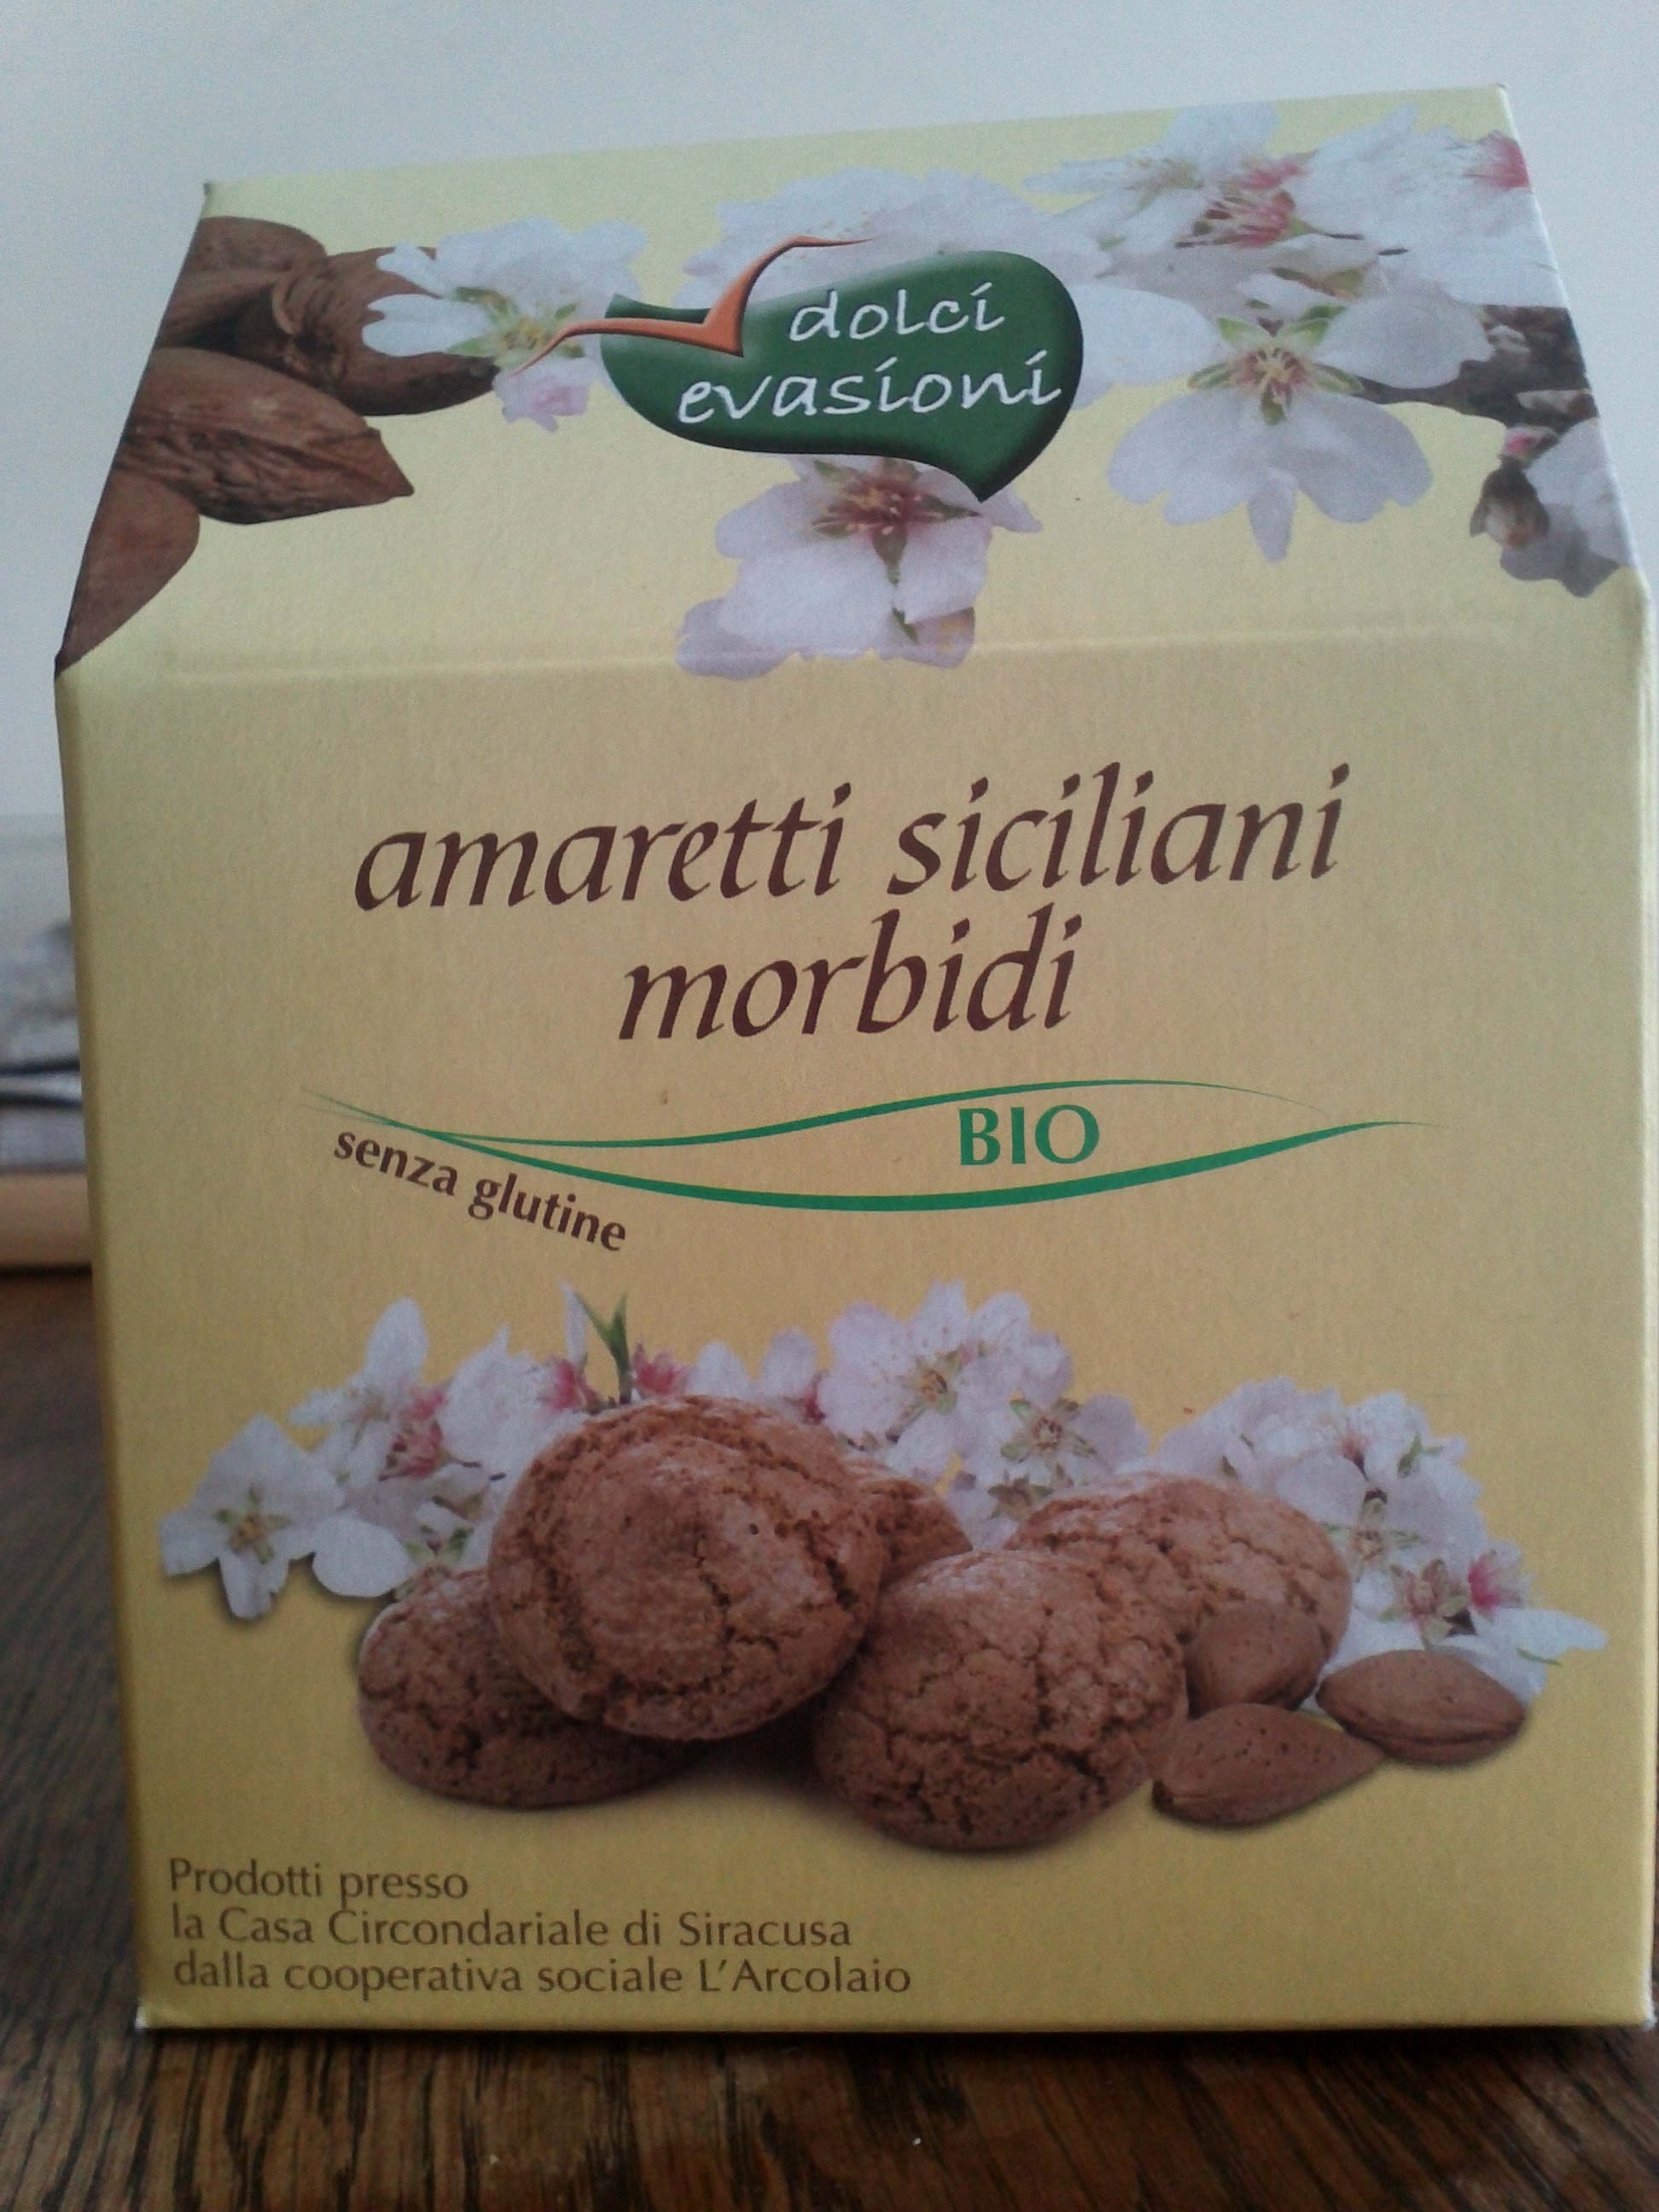 Amaretti siciliani morbidi - Product - it